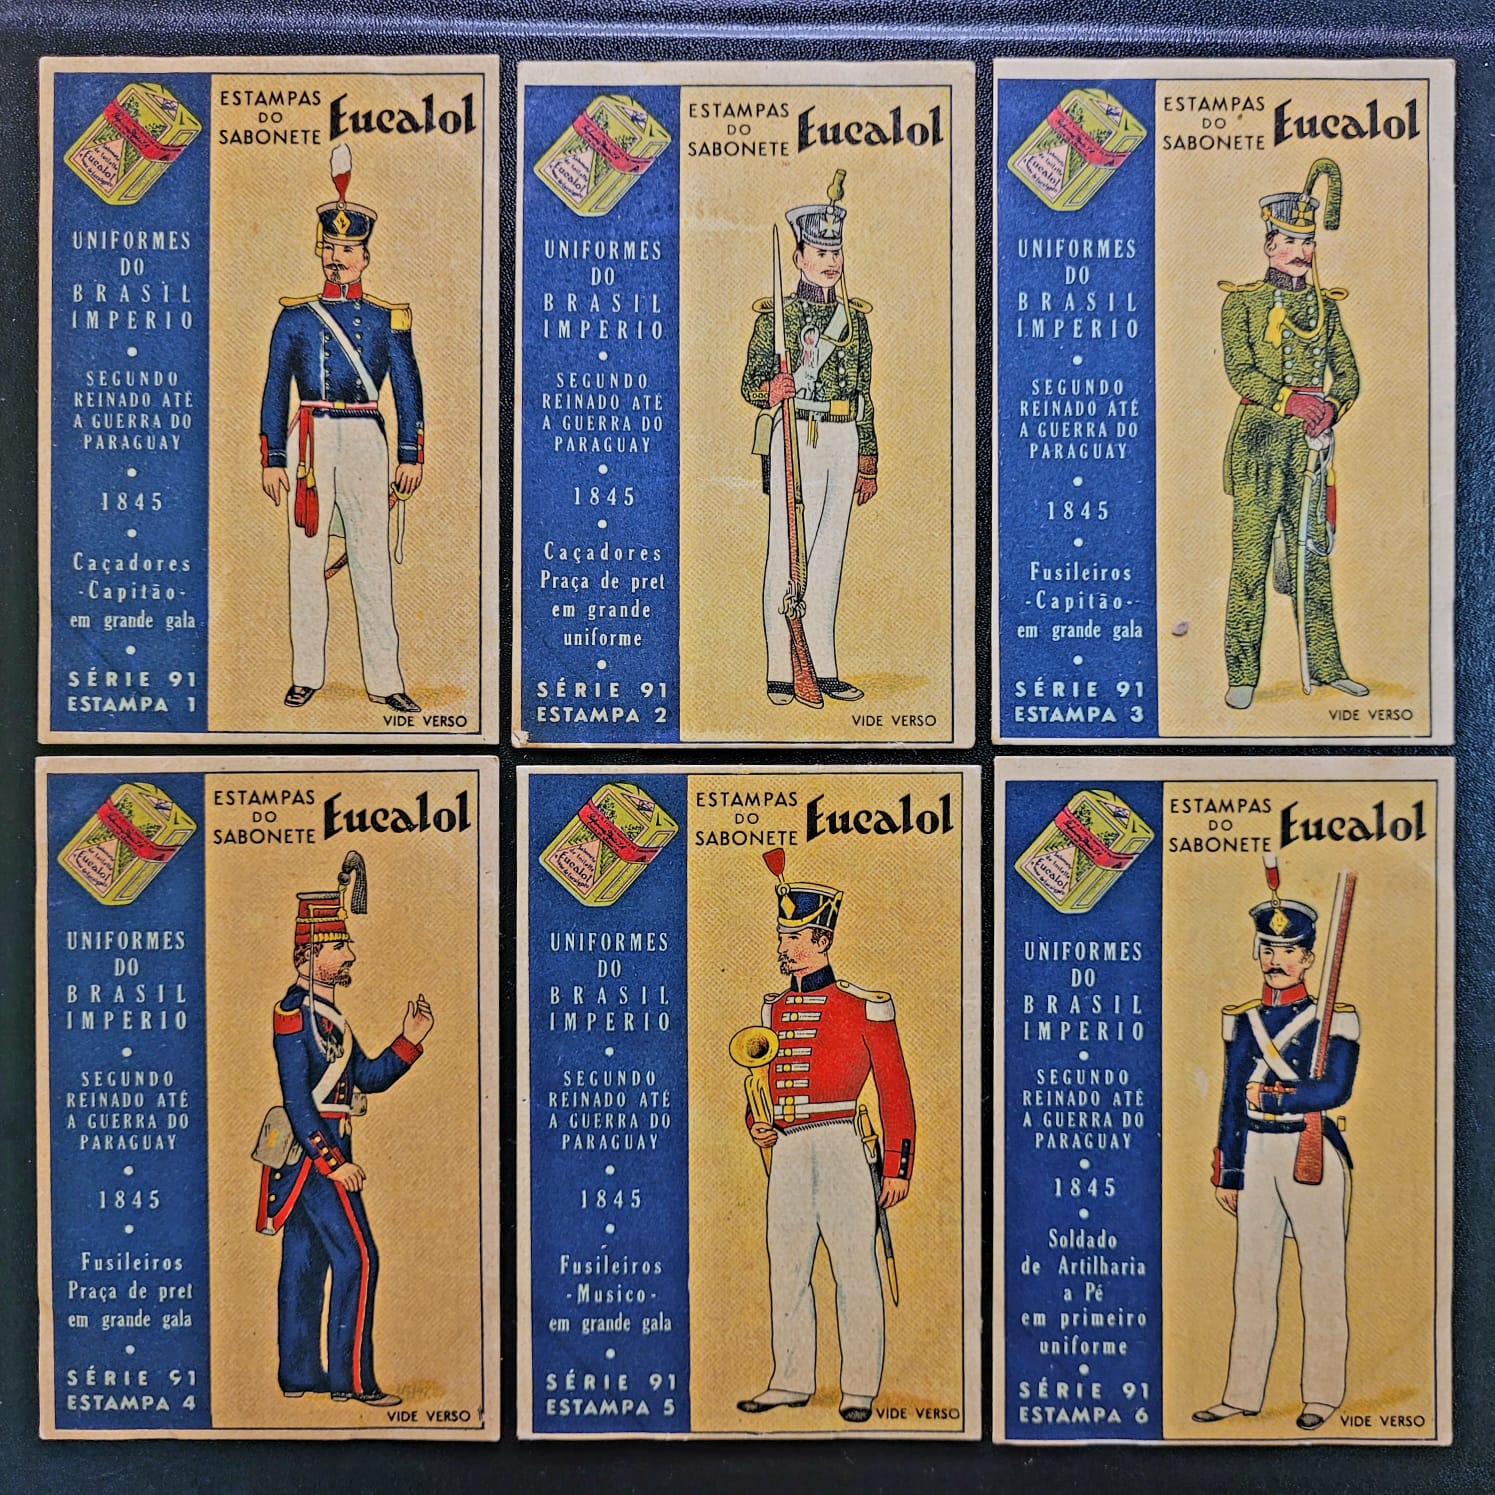 Estampas Eucalol Serie 91 Completa Uniformes do Brasil Imperio 1845 1 Casa do Colecionador